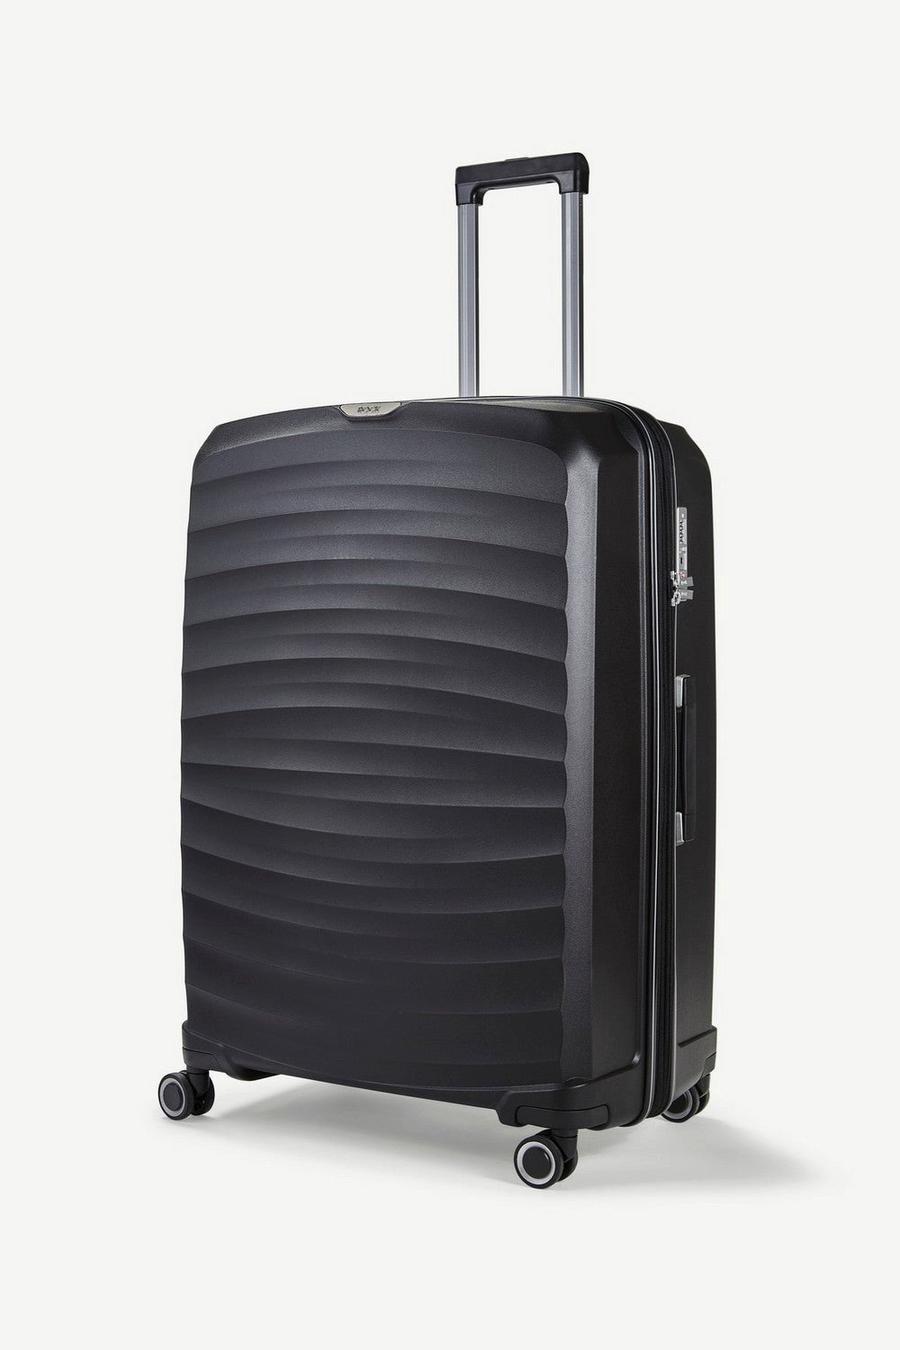 Black Sunwave 8 Wheel Hardshell Expandable Suitcase Large